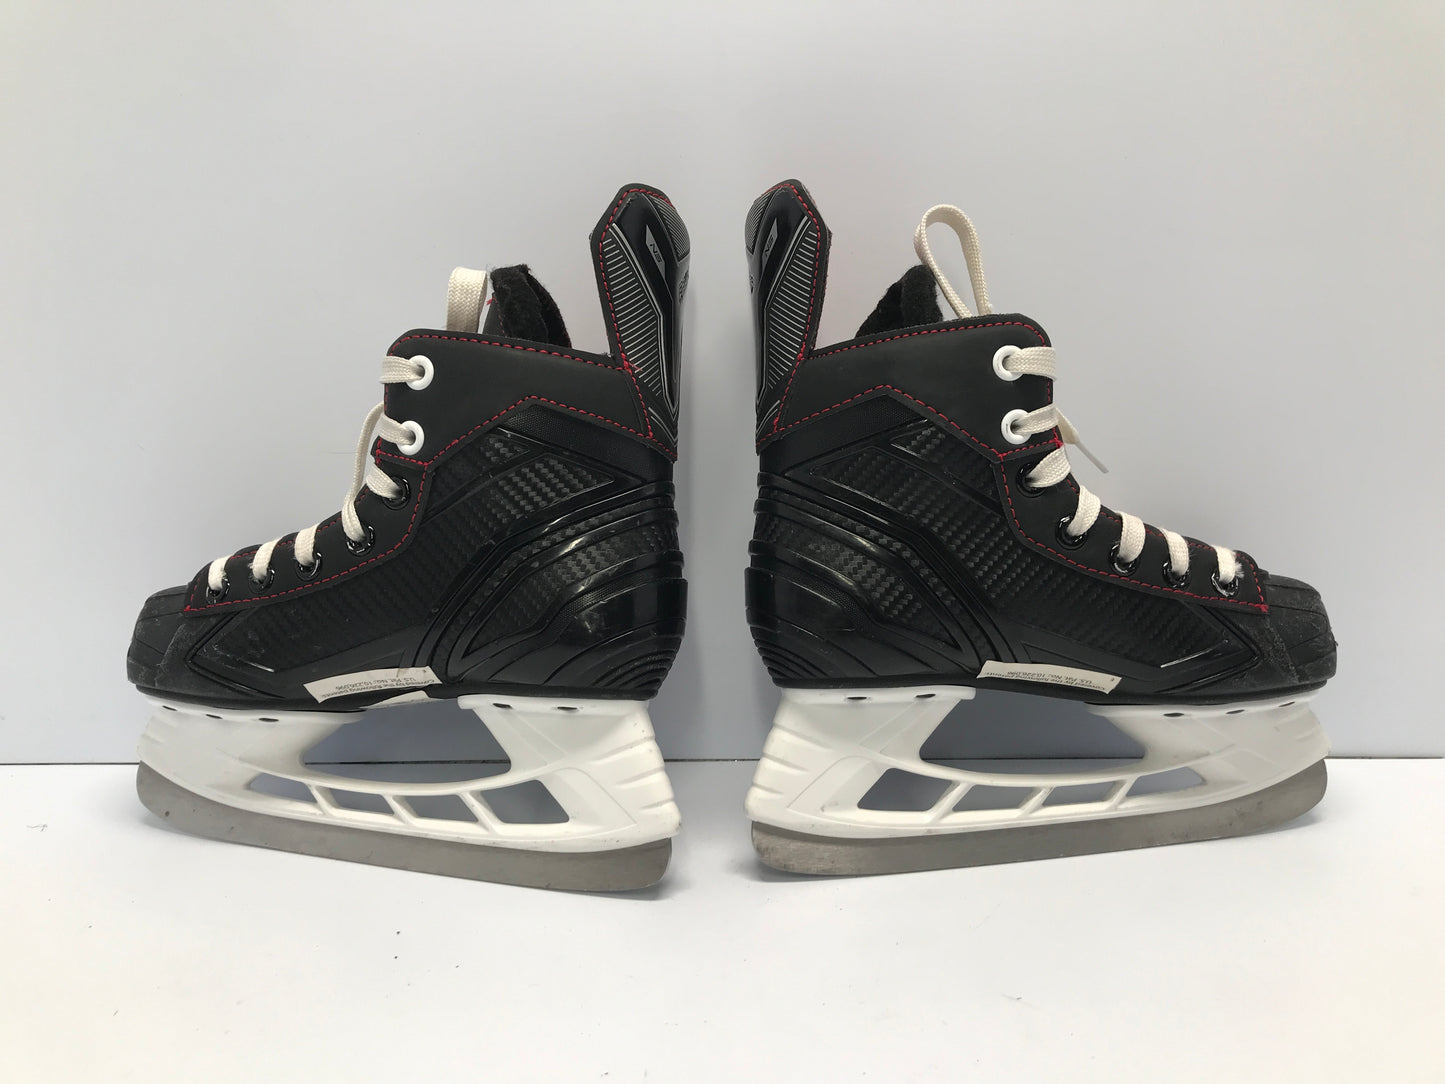 Hockey Skates Child Size 13 Shoe Size 12 Bauer Like New